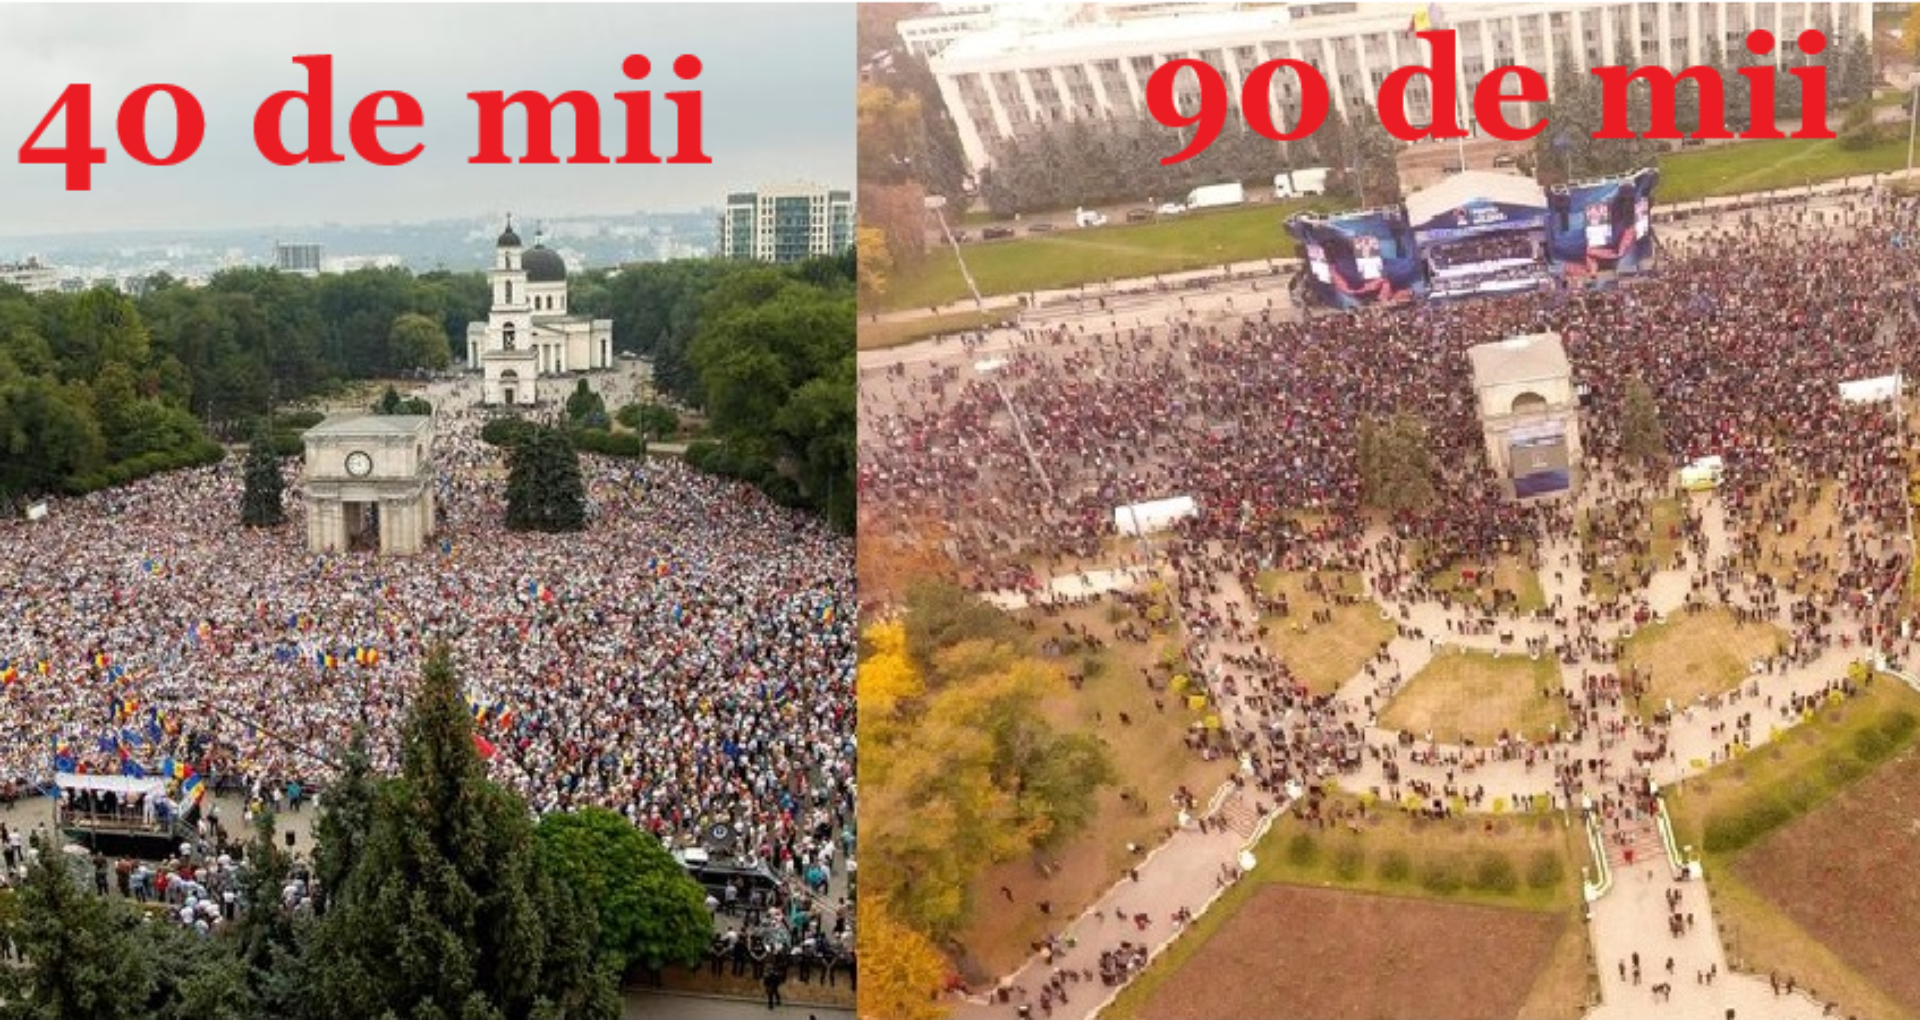 FOTO/ Cum calculează poliția numărul cetățenilor din PMAN: 40 de mii la protestul lui Năstase și 90 de mii la Adunarea lui Plahotniuc